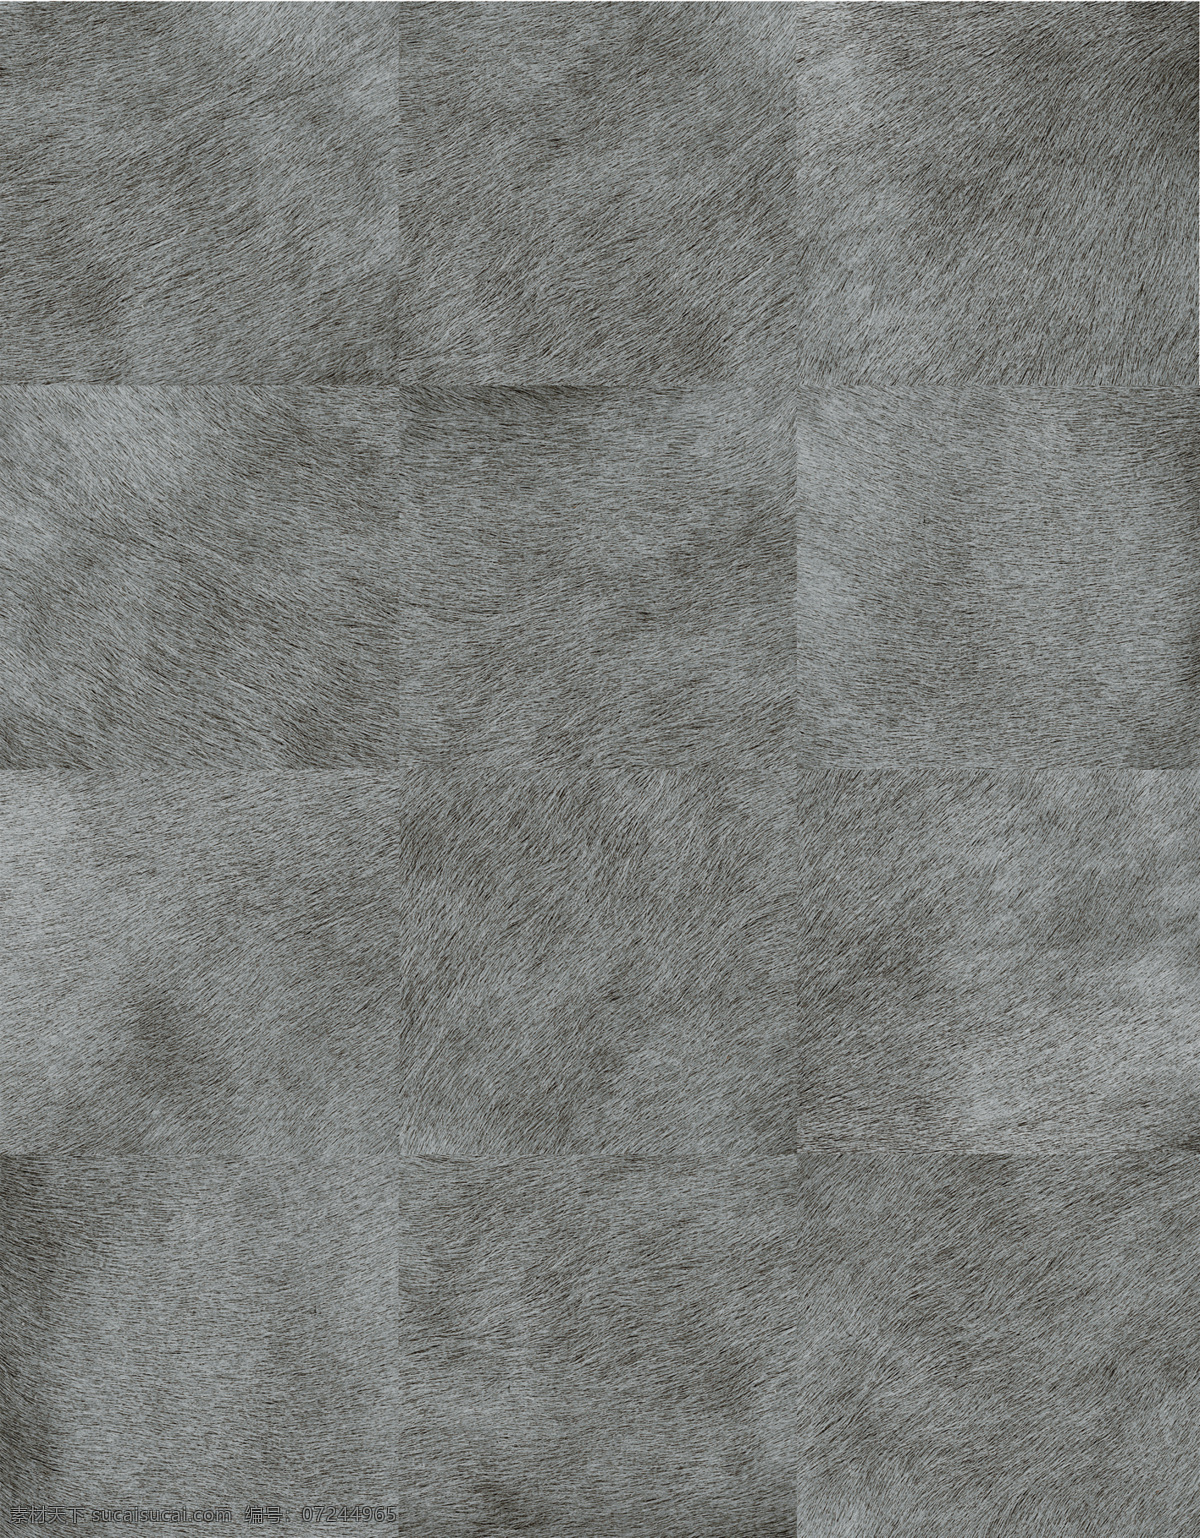 灰色 系 地毯 贴图 3d材质贴图 材质 地毯贴图素材 纹理 地毯贴图下载